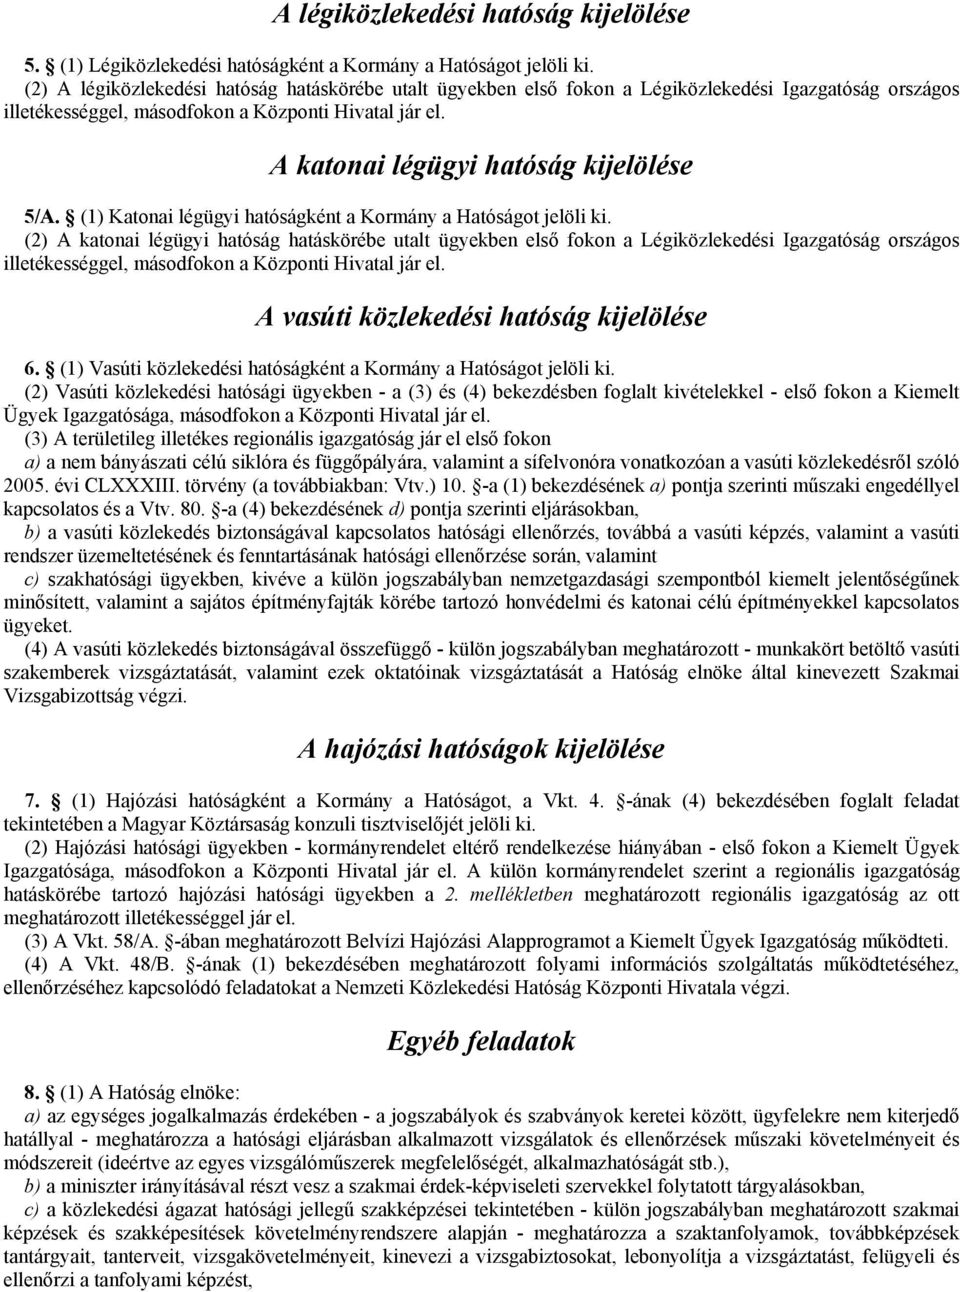 A katonai légügyi hatóság kijelölése 5/A. (1) Katonai légügyi hatóságként a Kormány a Hatóságot jelöli ki.